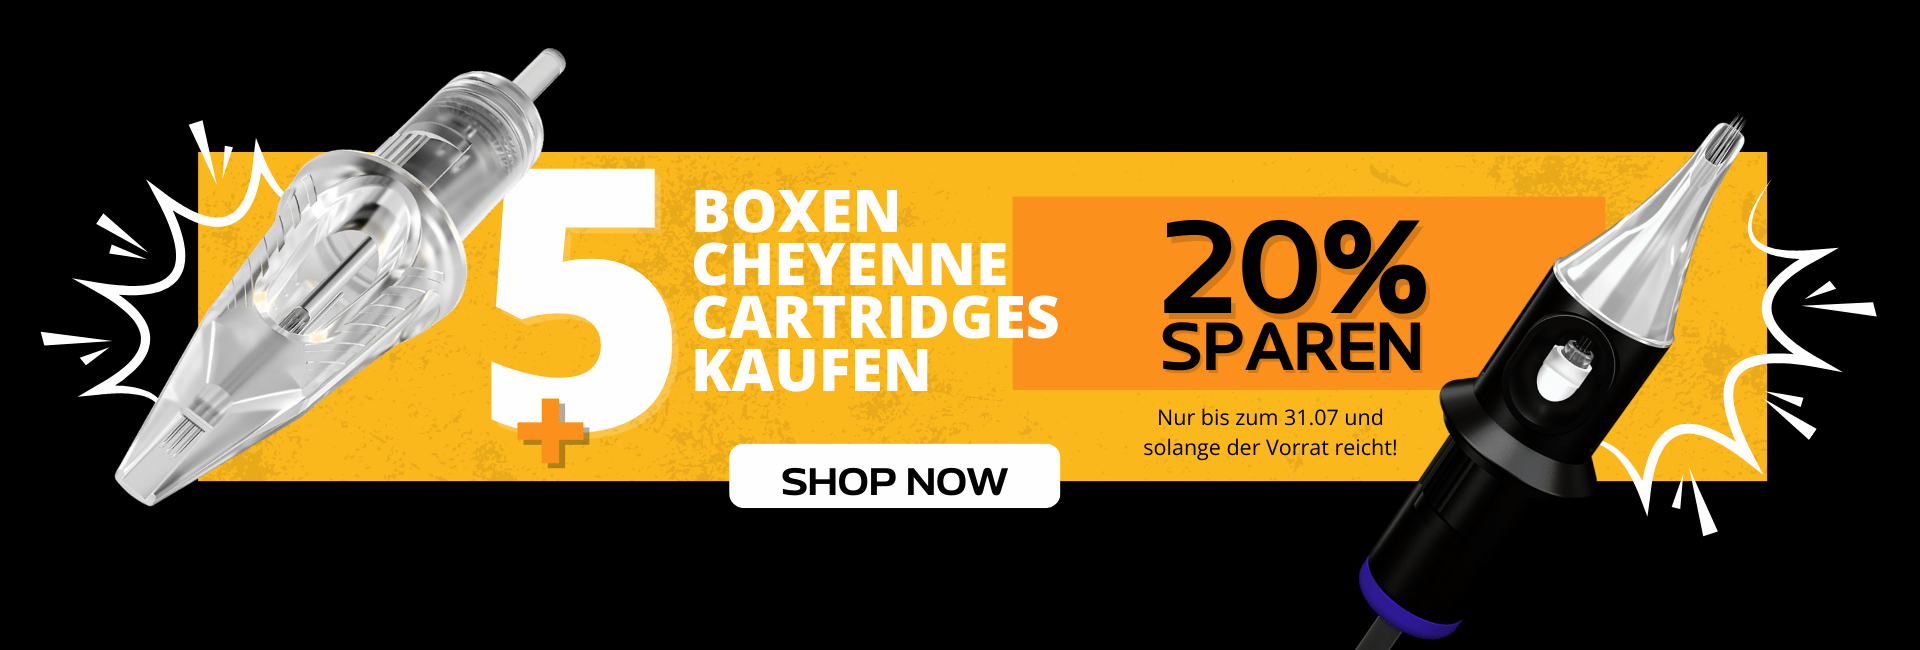 5 oder mehr Boxen Cheyenne Cartridges kaufen - 20 % sparen